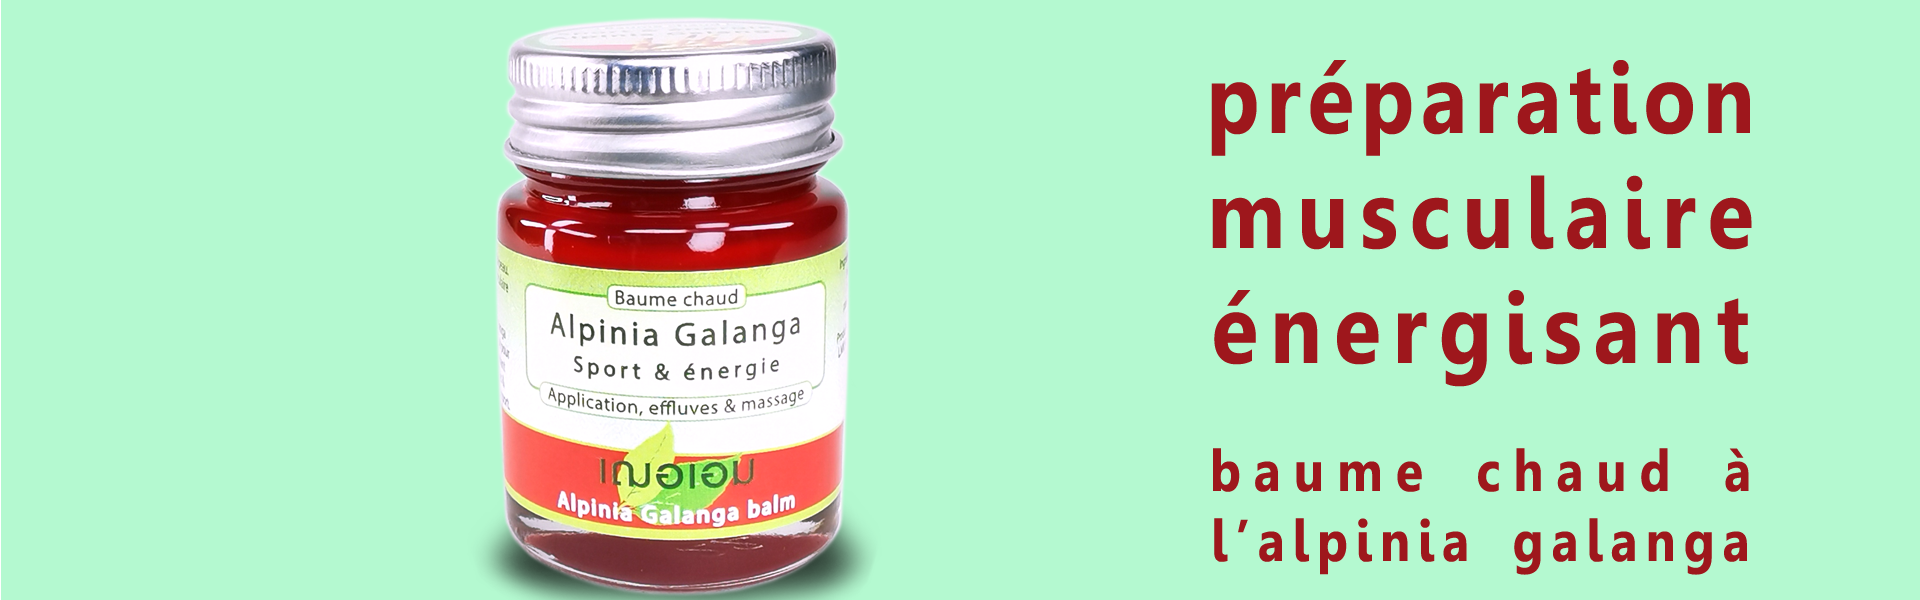 En Thaïlande, le rhizome d'Alpinia Galanga incorporé en baume chaud est appliqué pour son effet relaxant musculaire & stimulant circulatoire. Ses effluves énergisantes & revigorantes seront appréciées lors du sport.